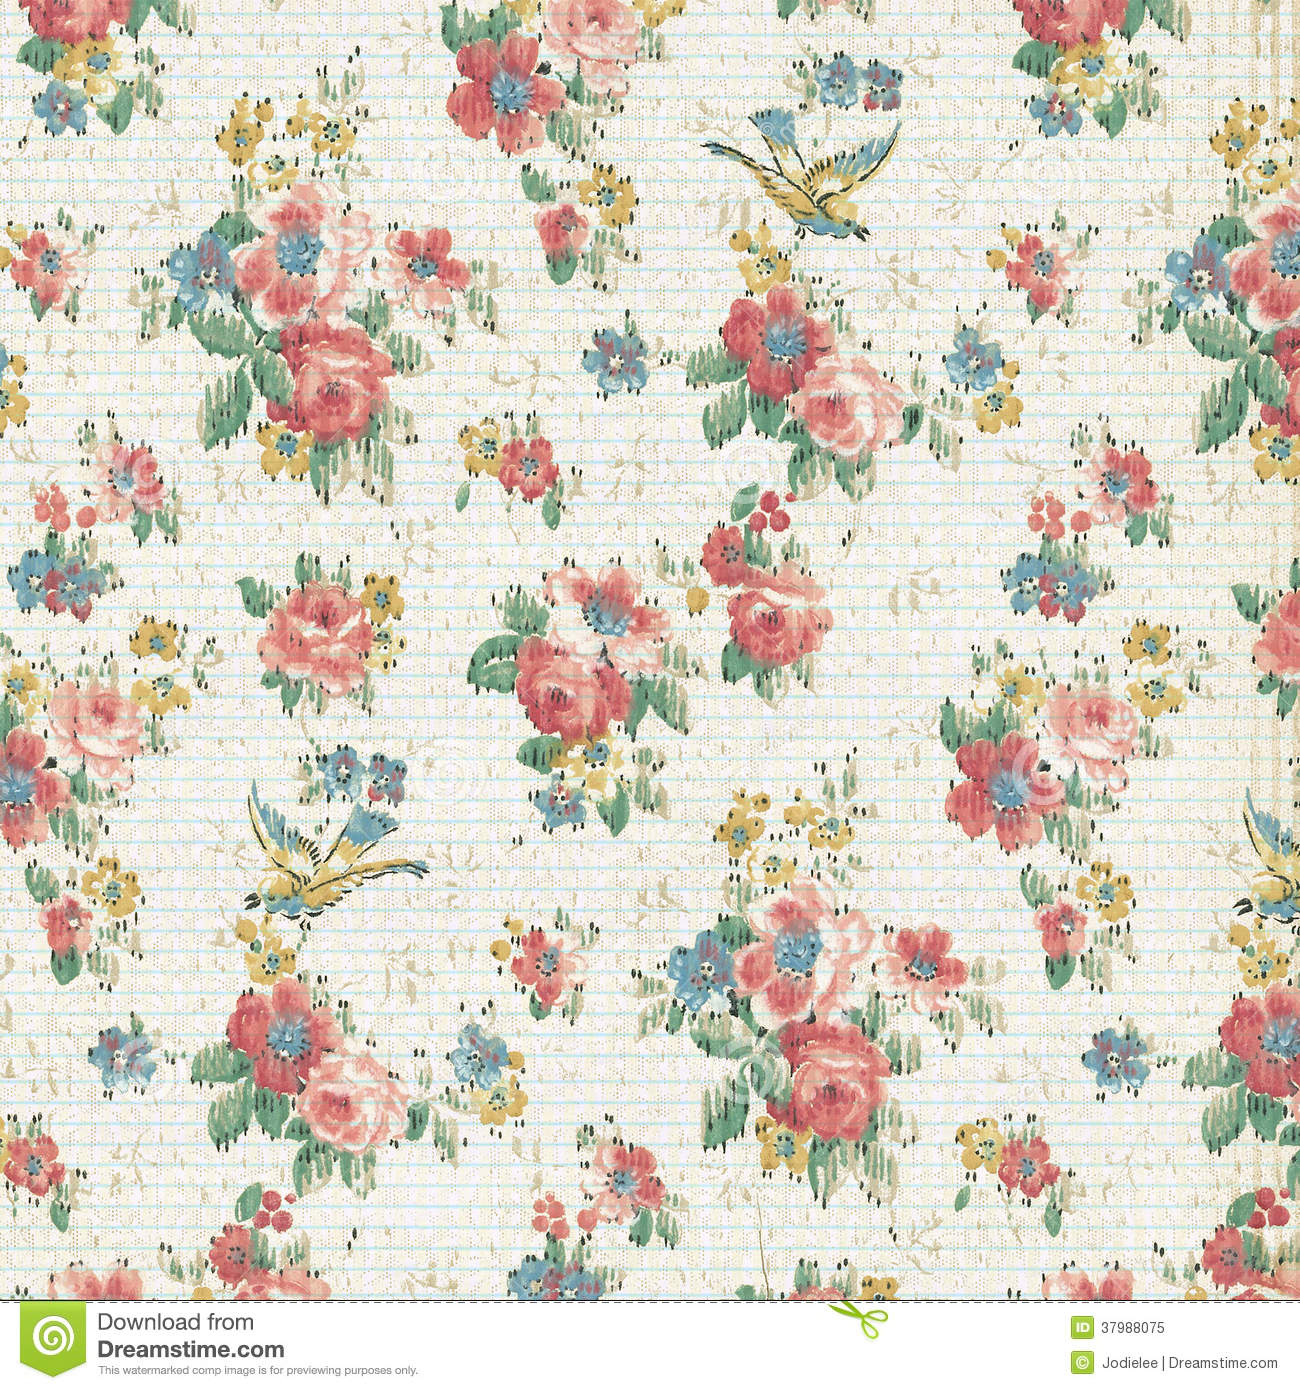 Vintage Floral Wallpaper Image High Definition